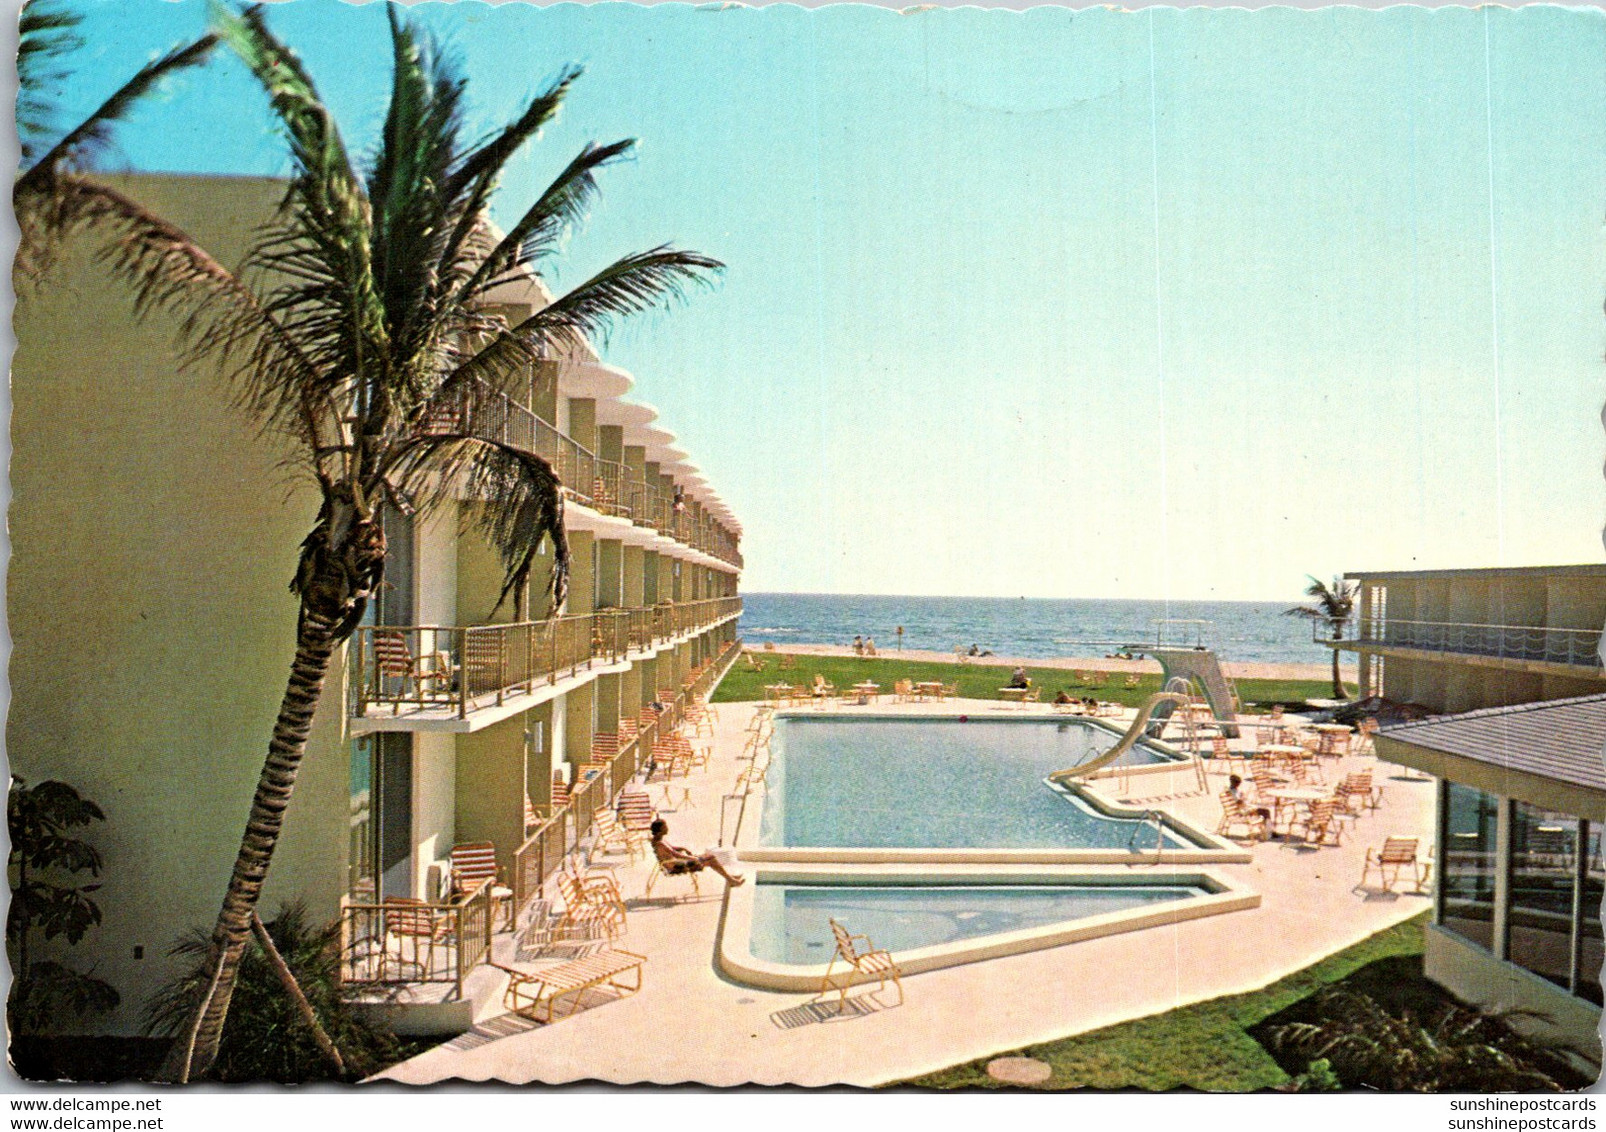 Florida Riviera Beach The Hilton Inn North Ocean Drive - Palm Beach